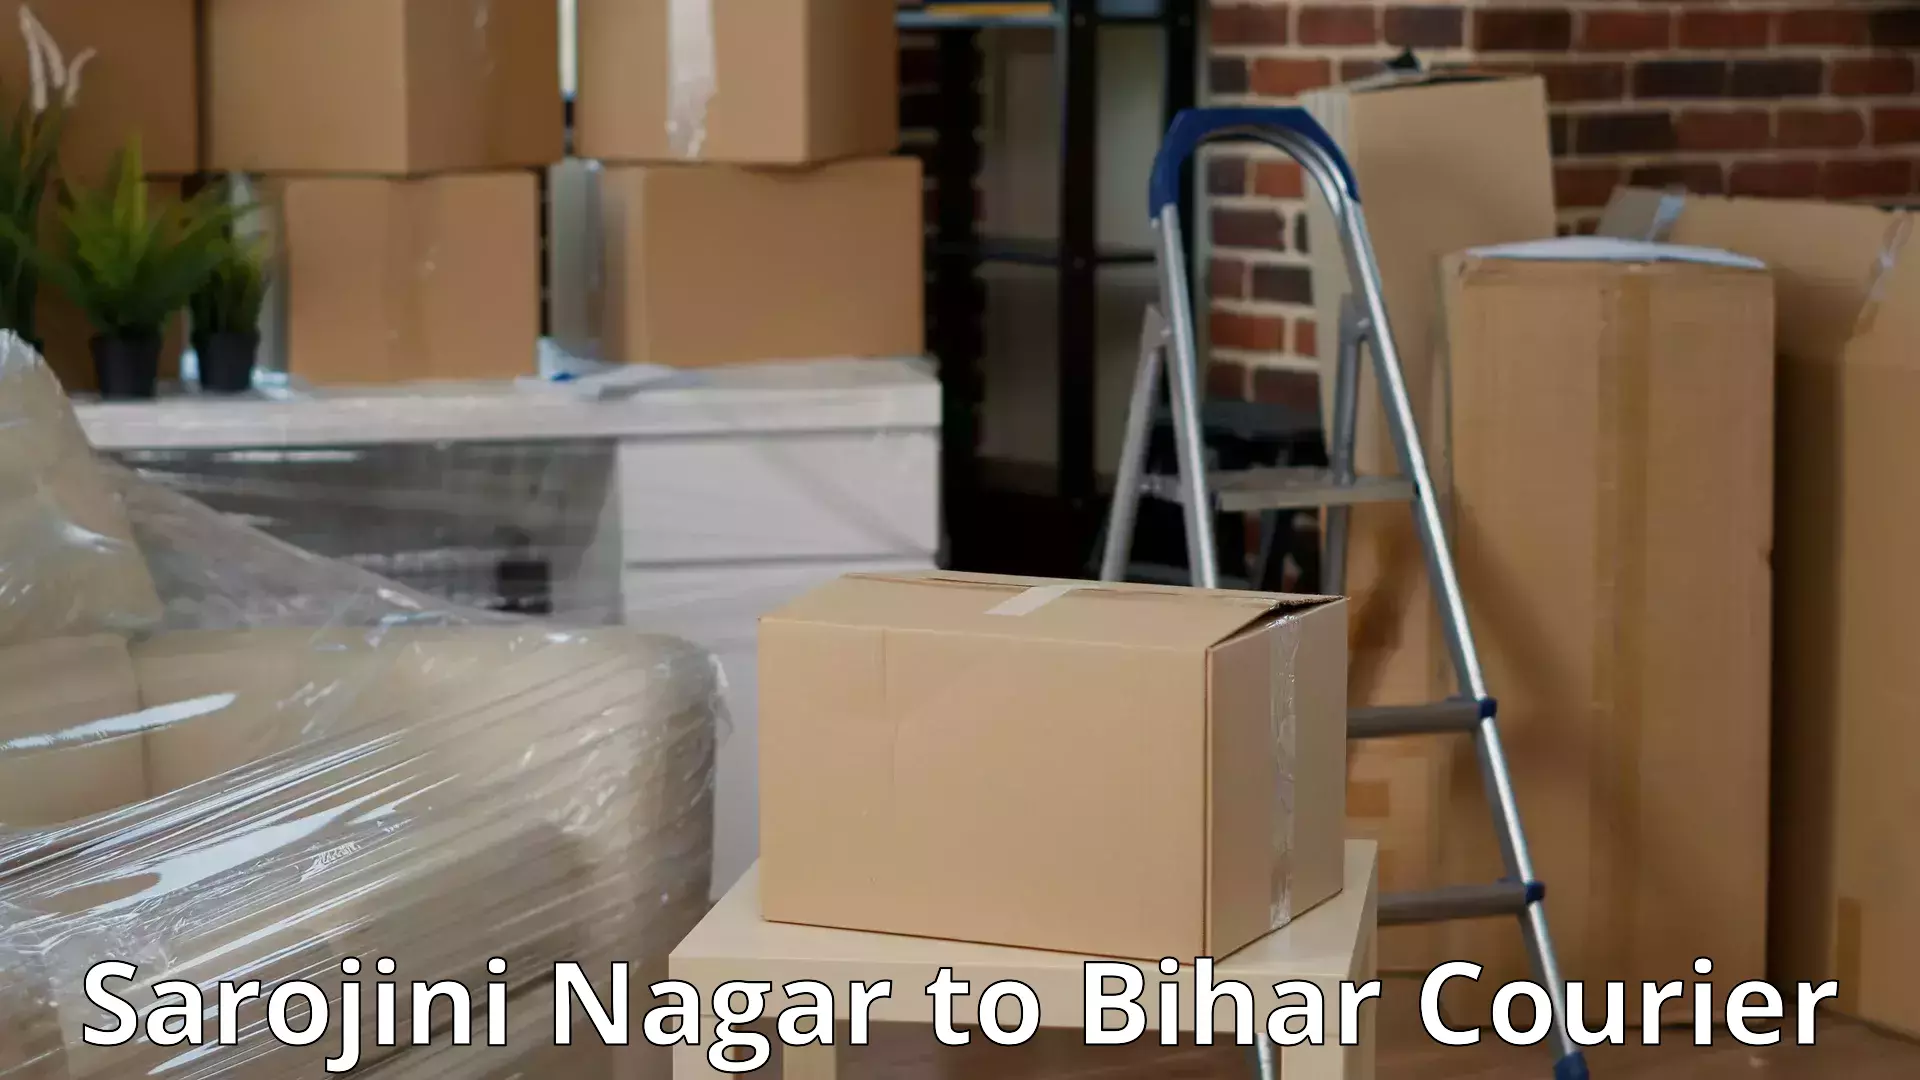 Moving and packing experts Sarojini Nagar to Aurangabad Bihar